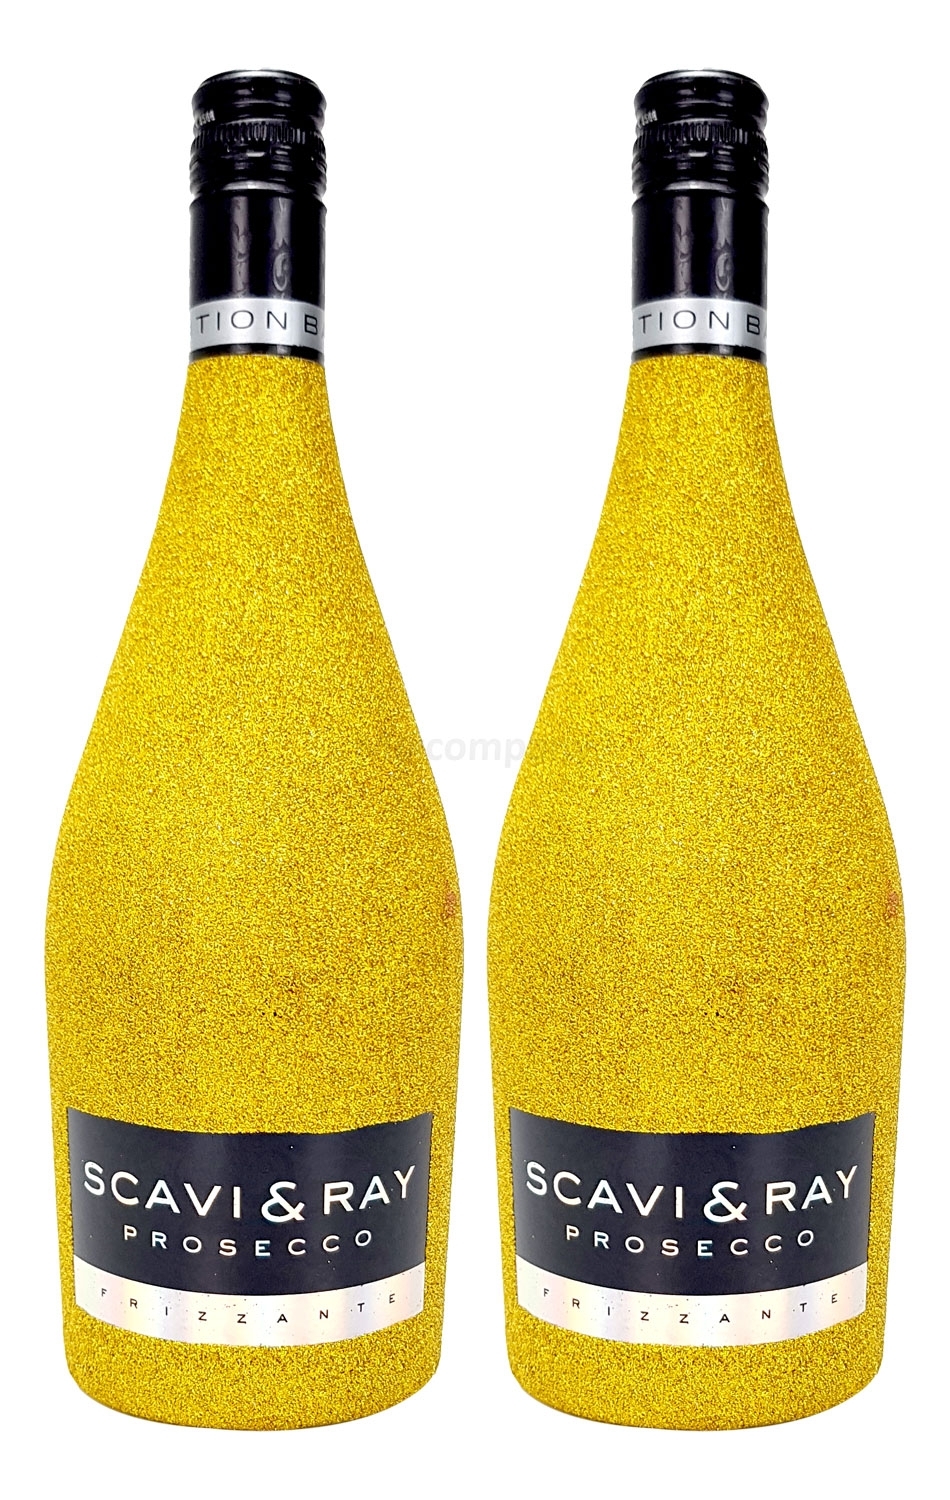 Scavi & Ray Prosecco Frizzante 0,75l (10,5% Vol) - Bling Bling Glitzer Glitzerflasche Flaschenveredelung für besondere Anlässe - Gold Aktion - 2 Stück (2x 0,75l = 1,5l) -[Enthält Sulfite]